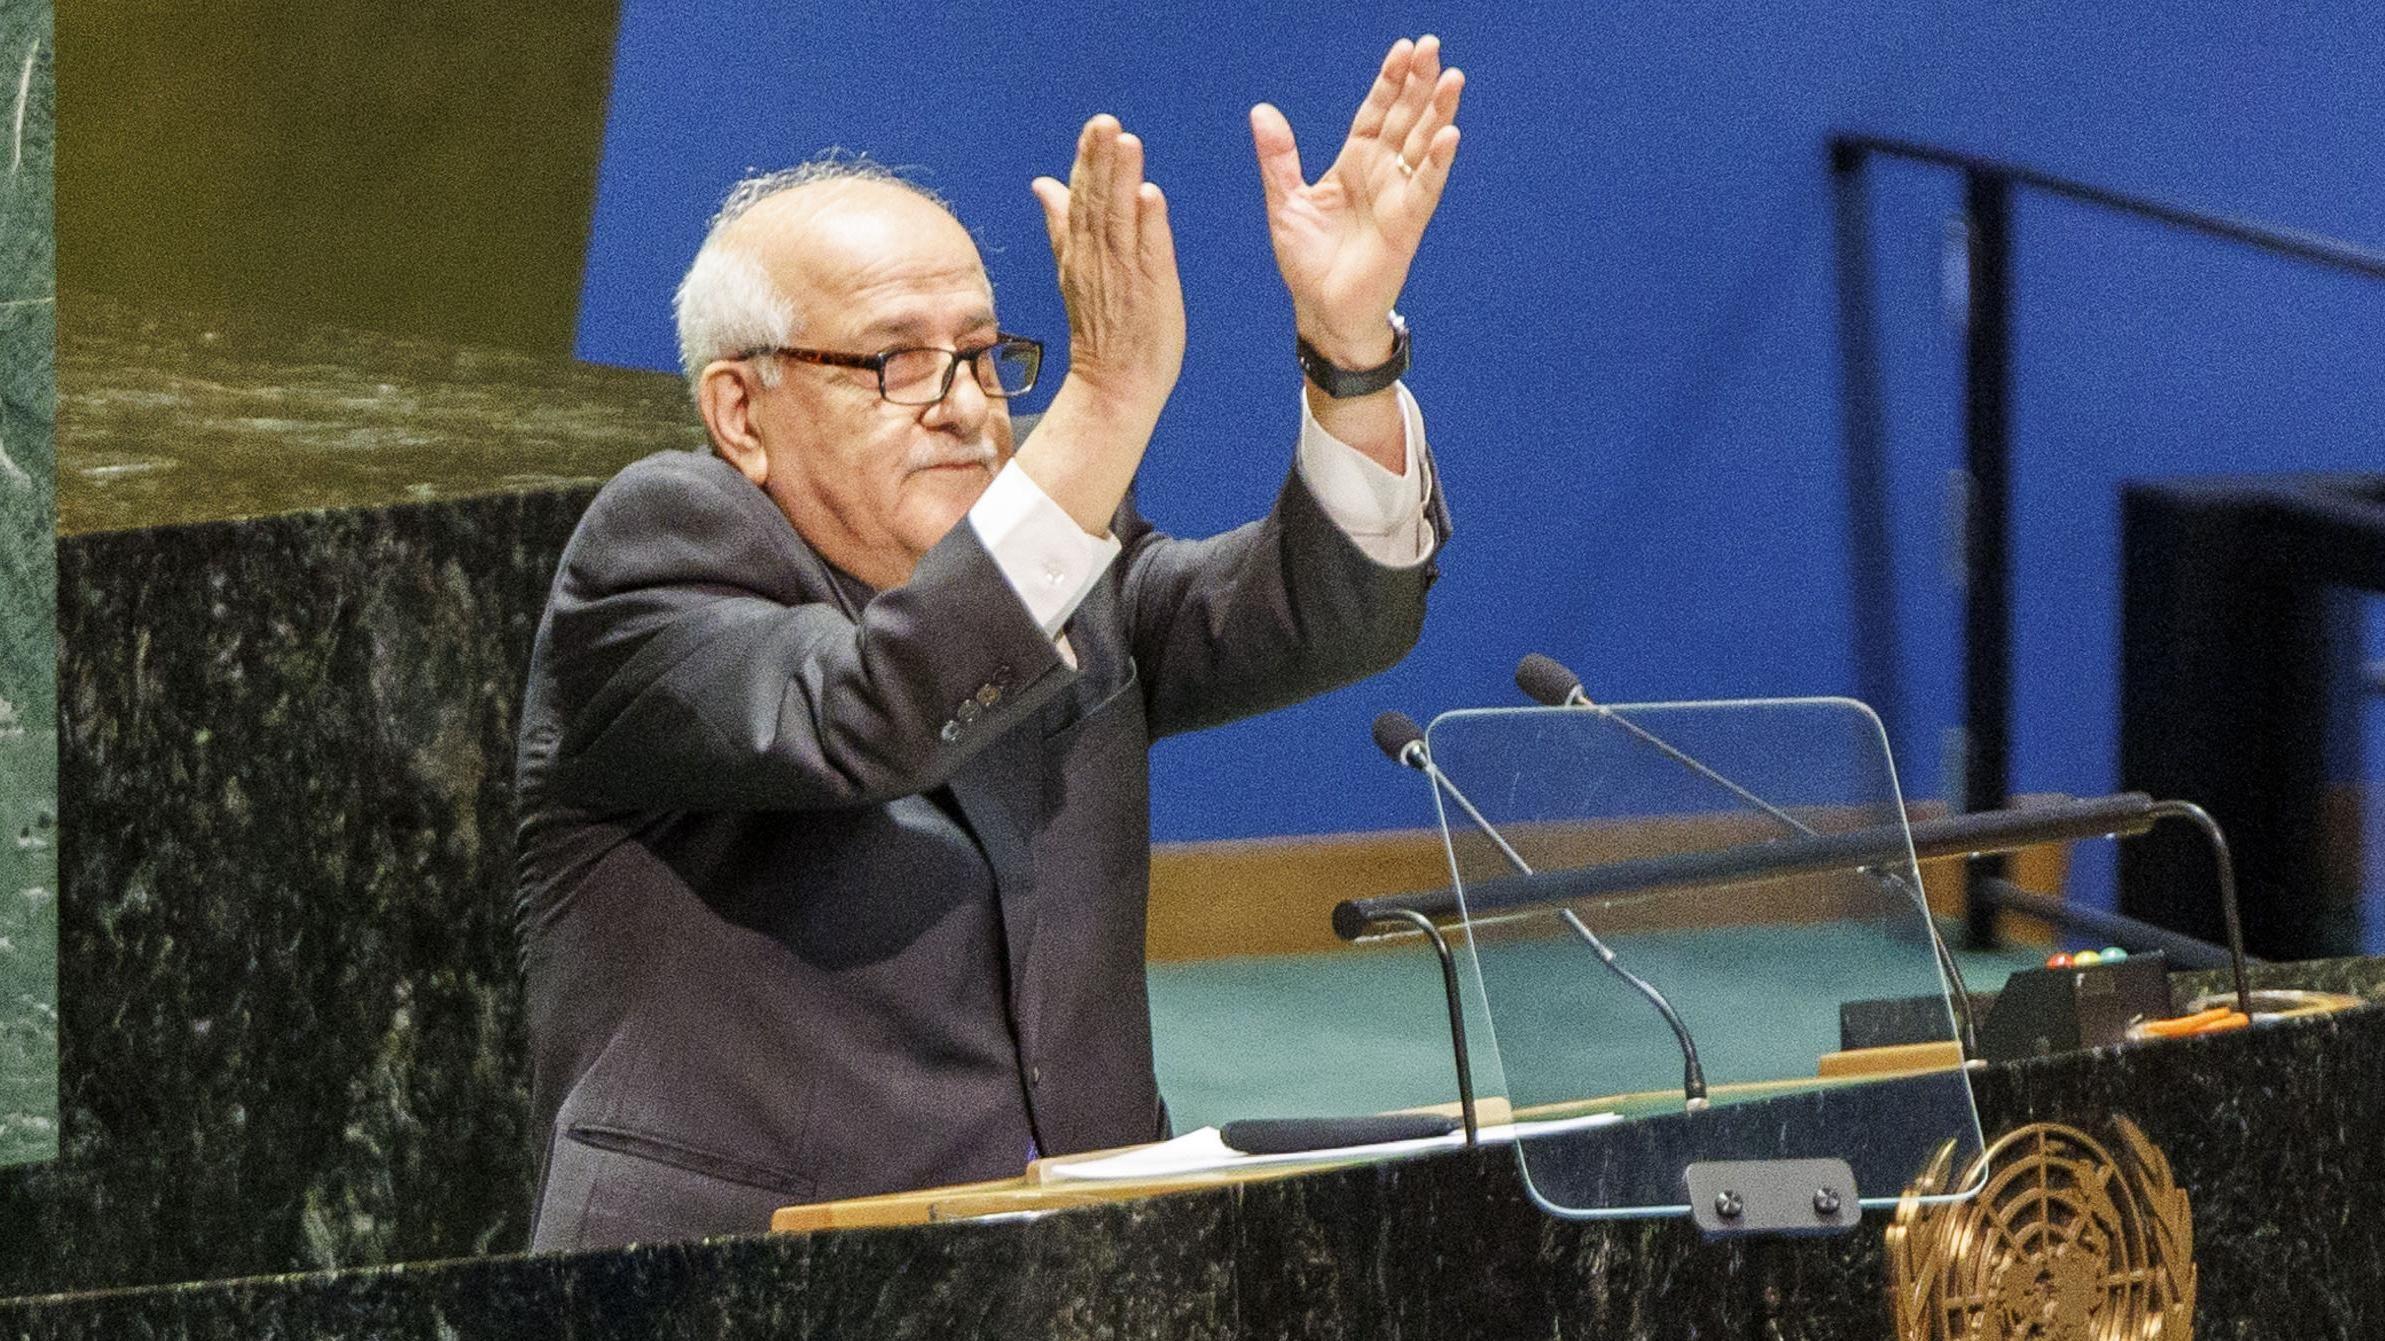 مندوب فلسطين لدى الأمم المتحدة، رياض منصور، يصفق بعد تصويت الجمعية العامة للأمم المتحدة على طلب فلسطين لتصبح عضواً كامل العضوية في الأمم المتحدة